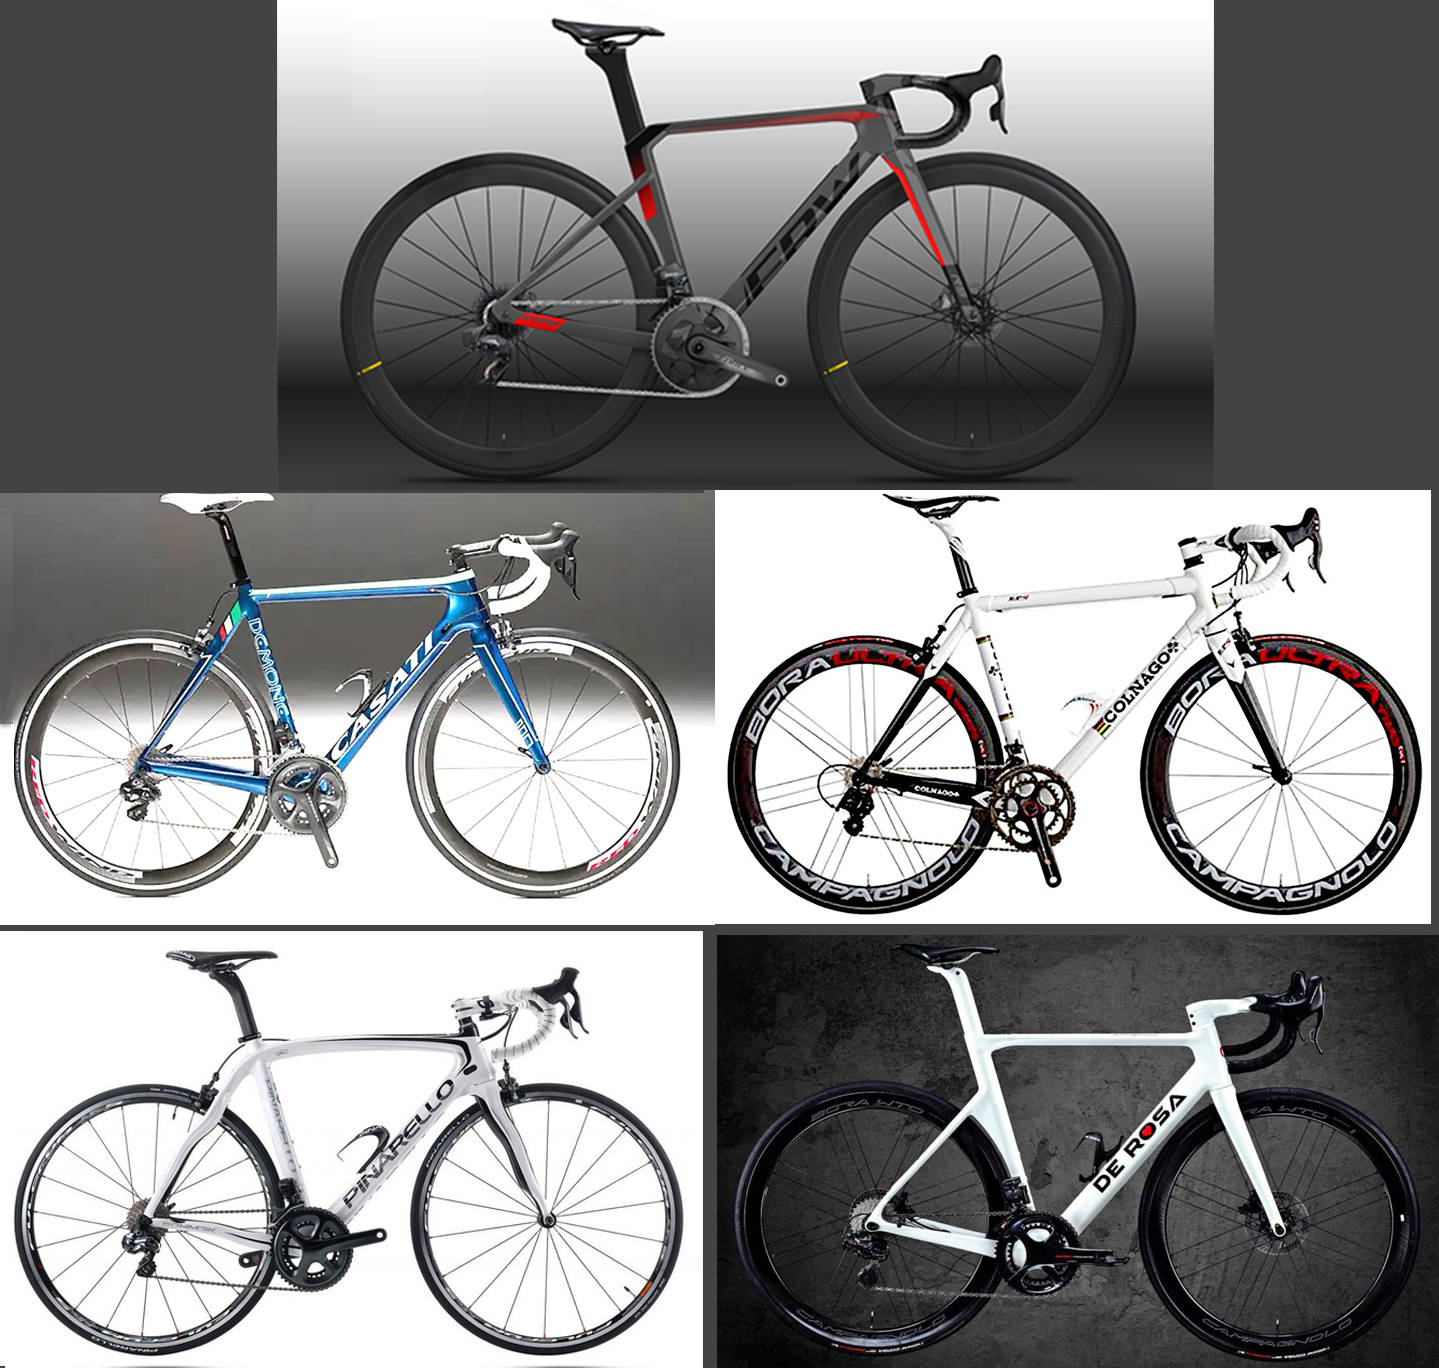 世界排名第一自行车品牌辐轮王意大利自行车一王四后指哪几个品牌